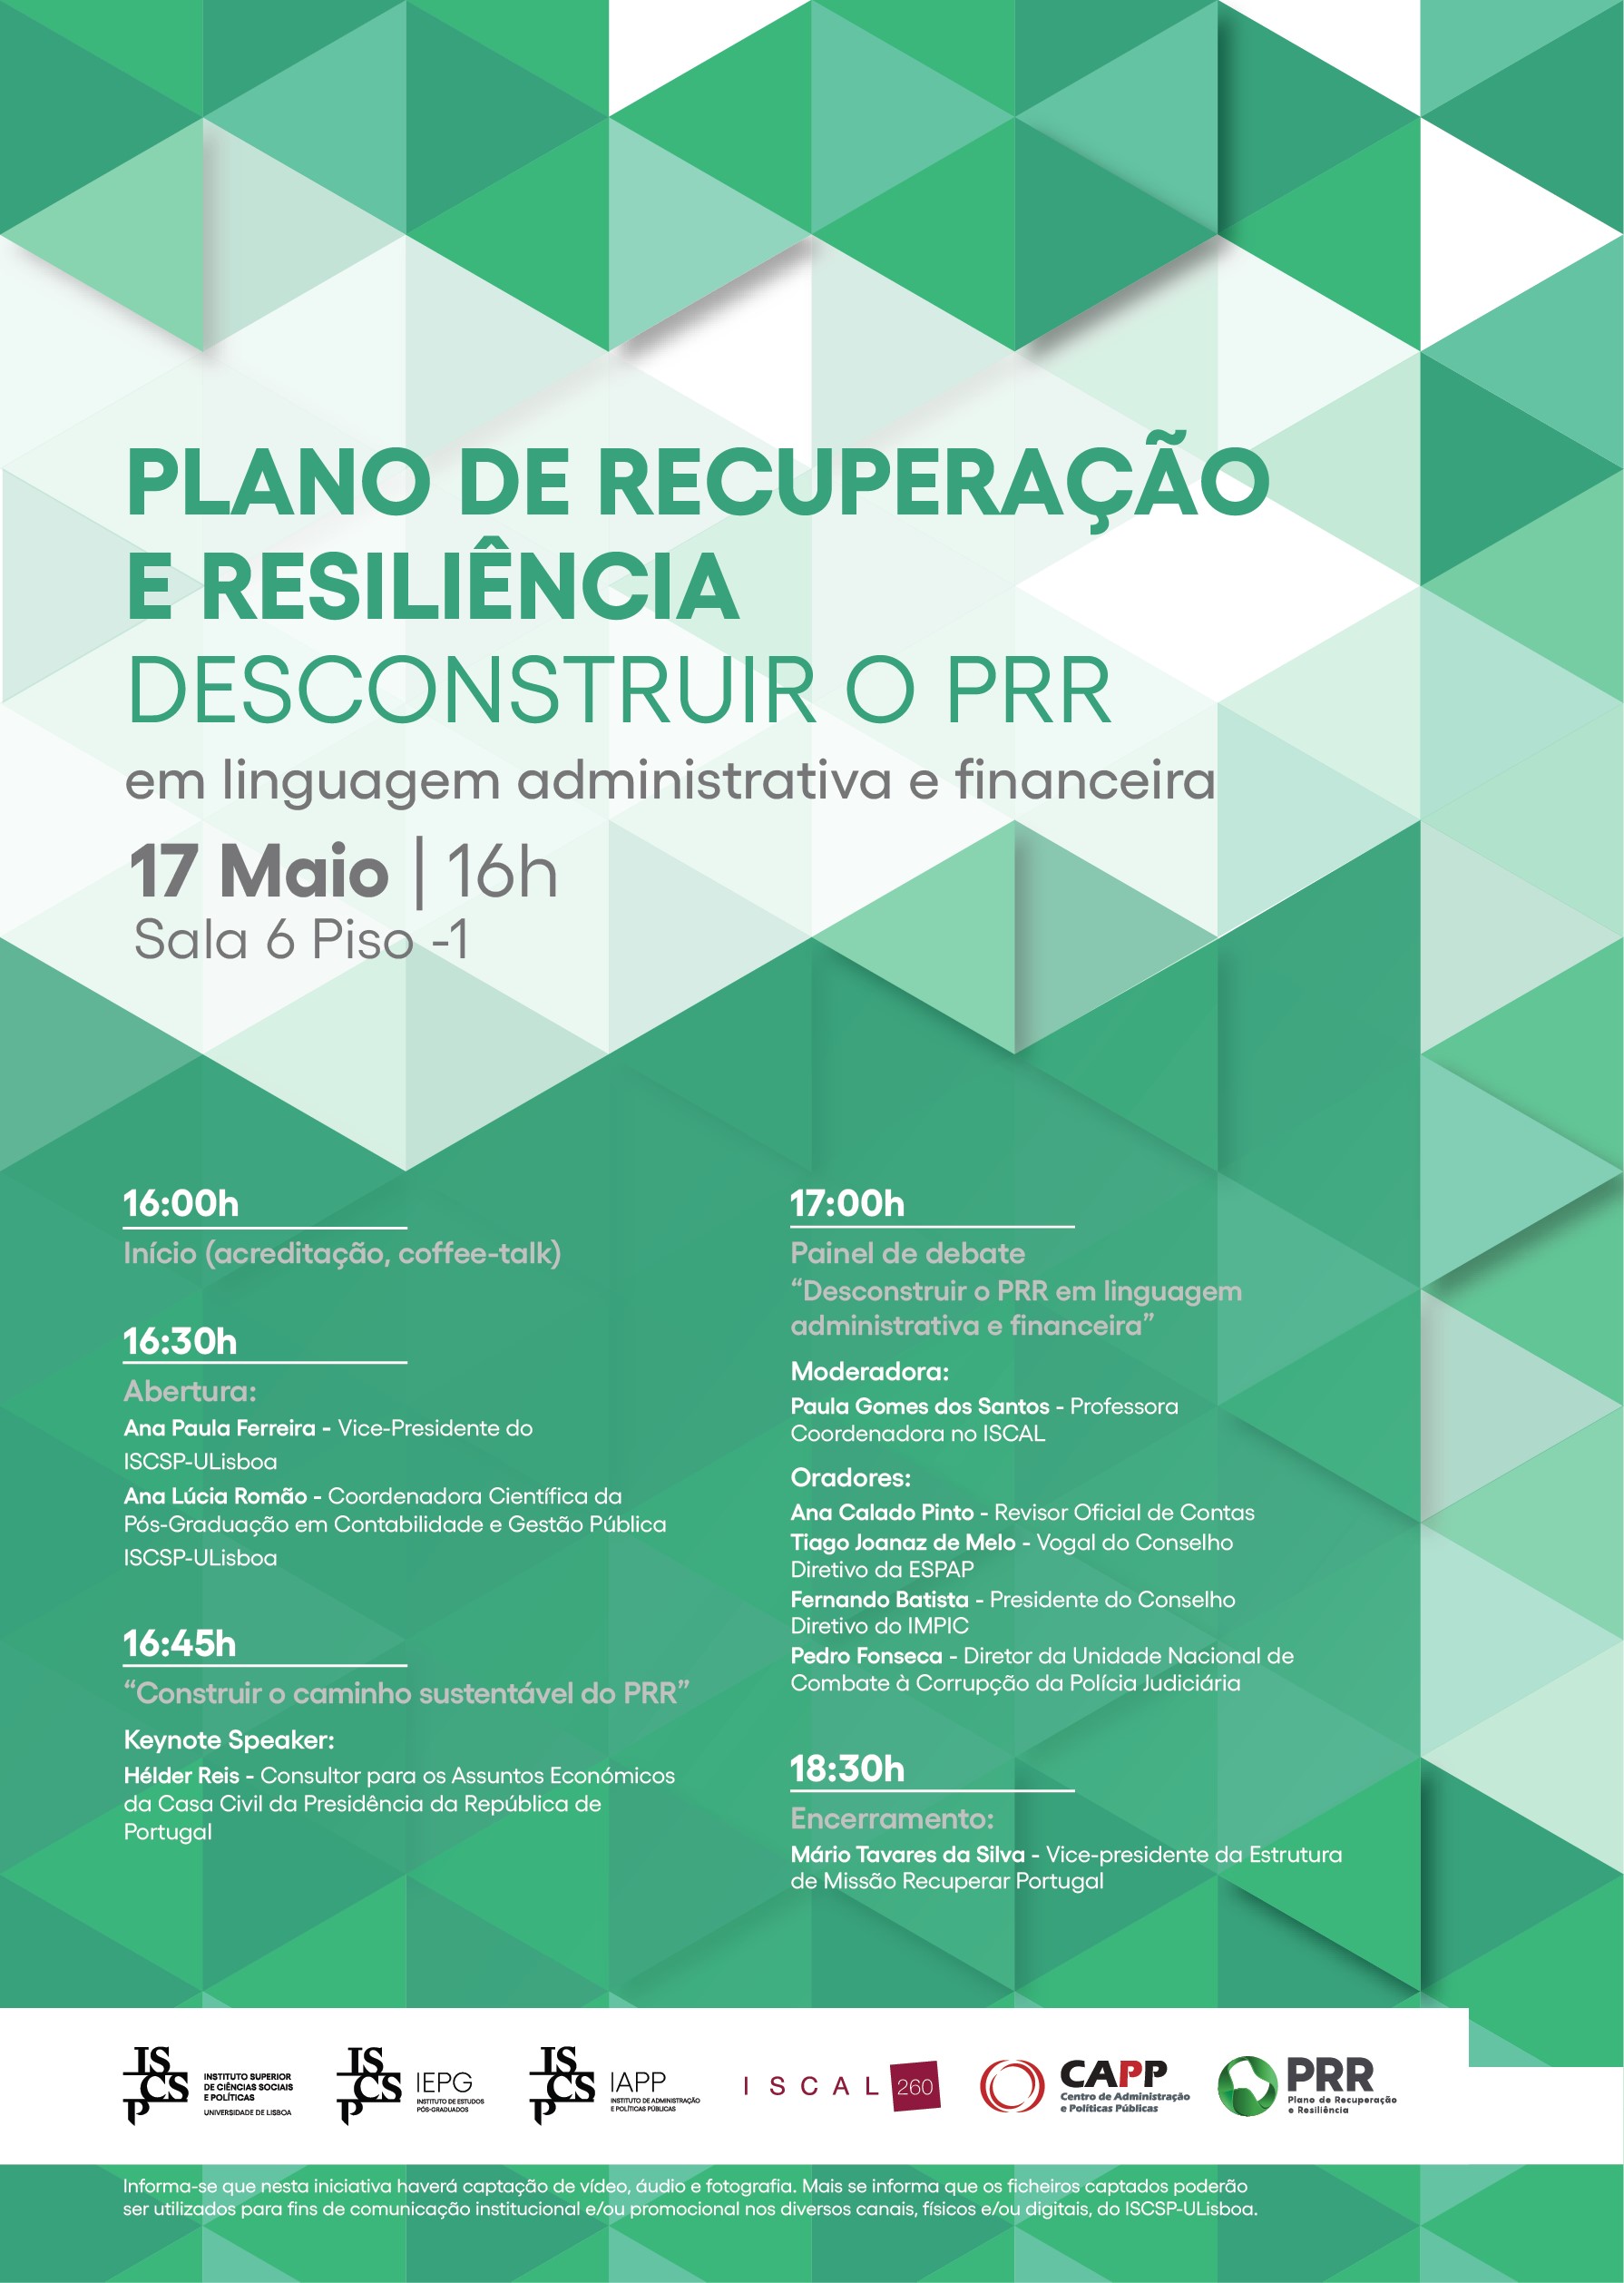 Conferência “Plano de Recuperação e Resiliência – Desconstruir o PRR em Linguagem Administrativa e Financeira”